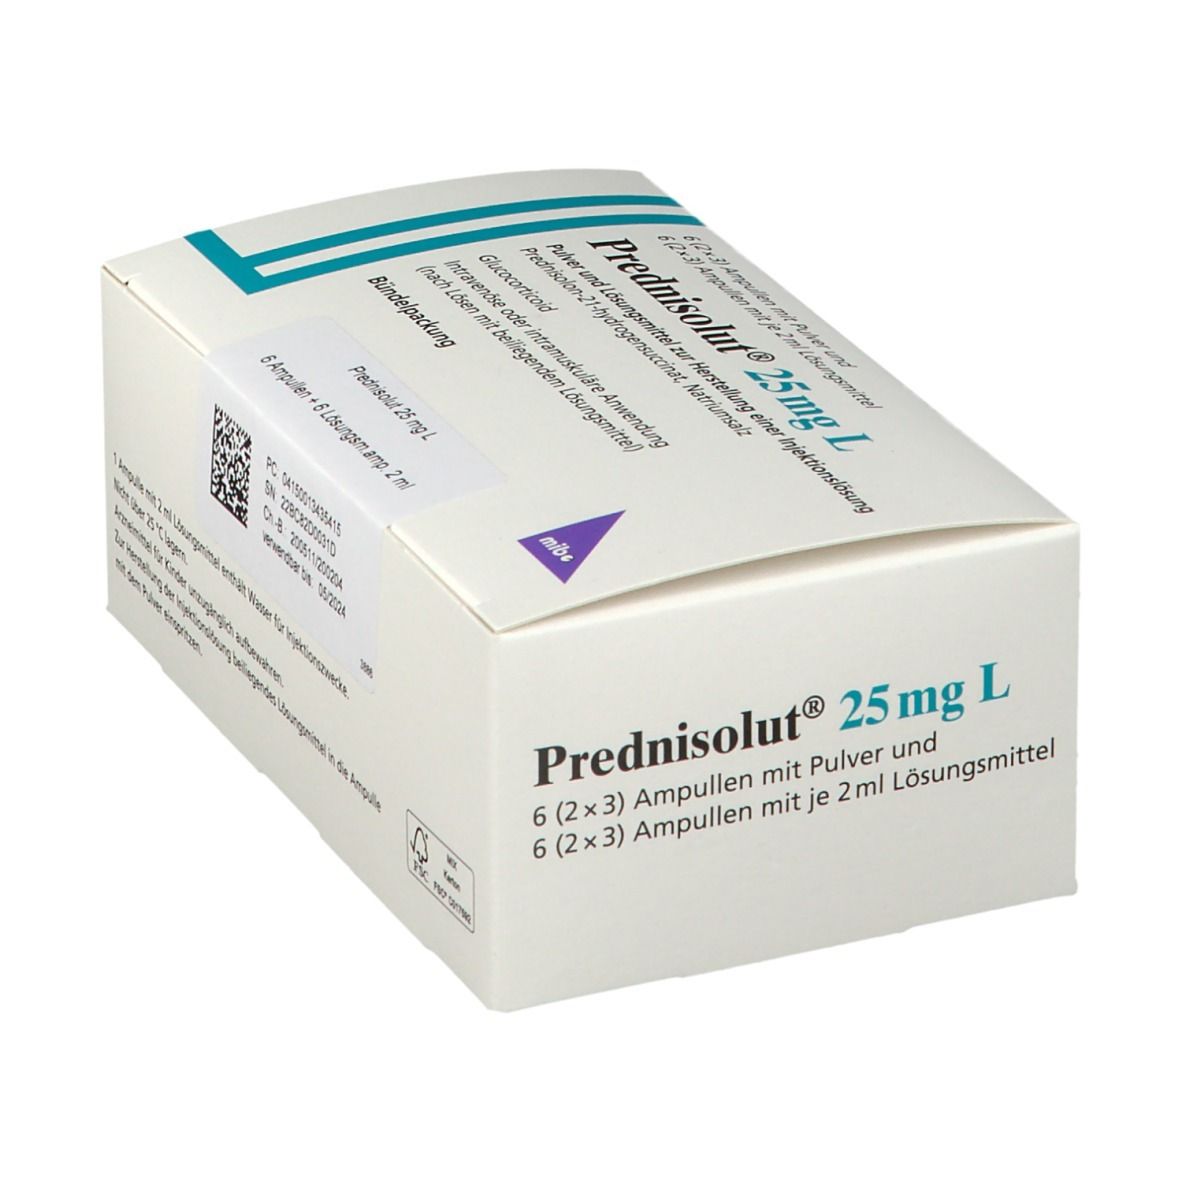 Prednisolut® 25 mg L